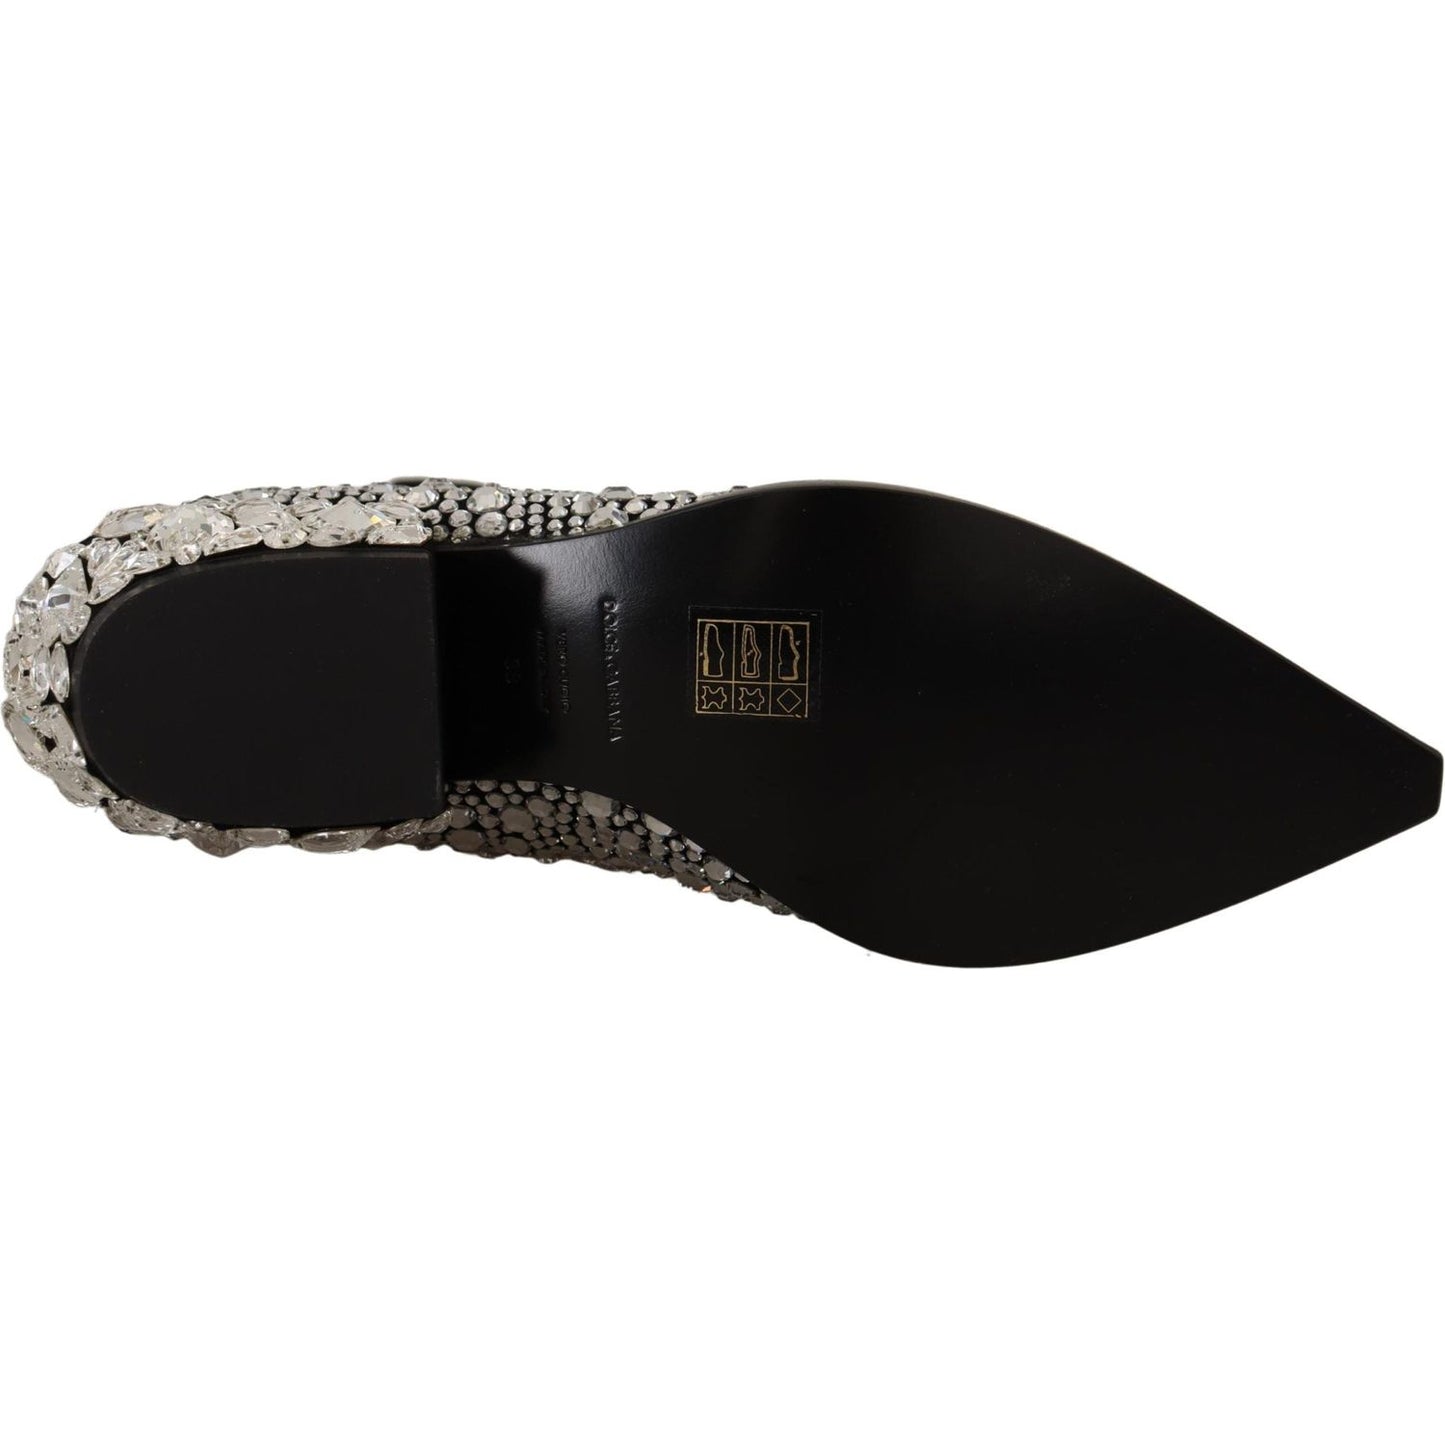 Dolce & Gabbana Crystal-Embellished Black Suede Boots black-suede-strass-crystal-cowgirl-boots